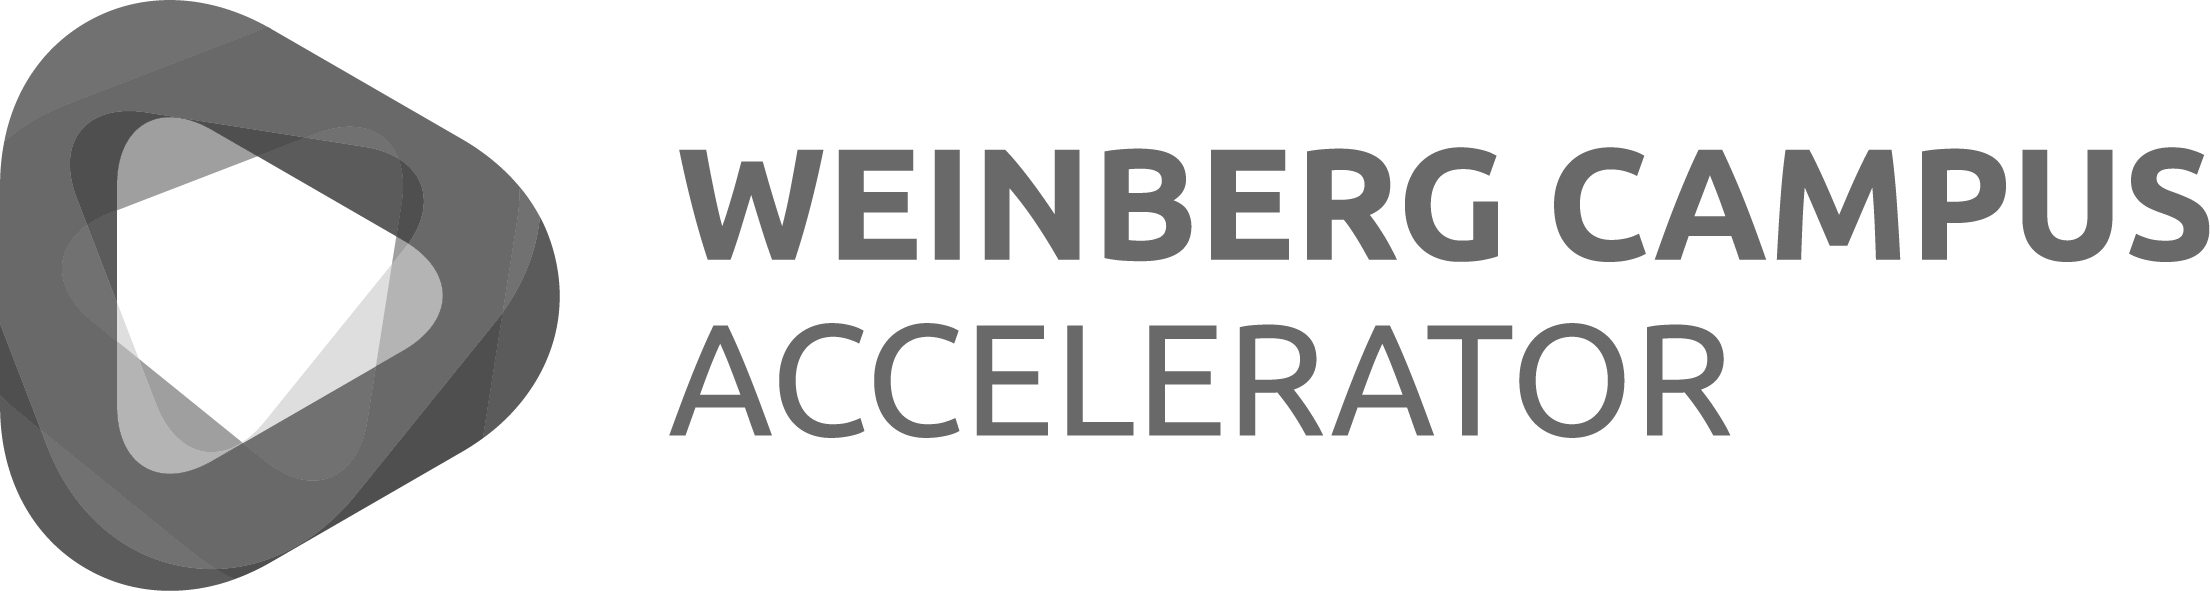 Weinberg Campus Accelerator